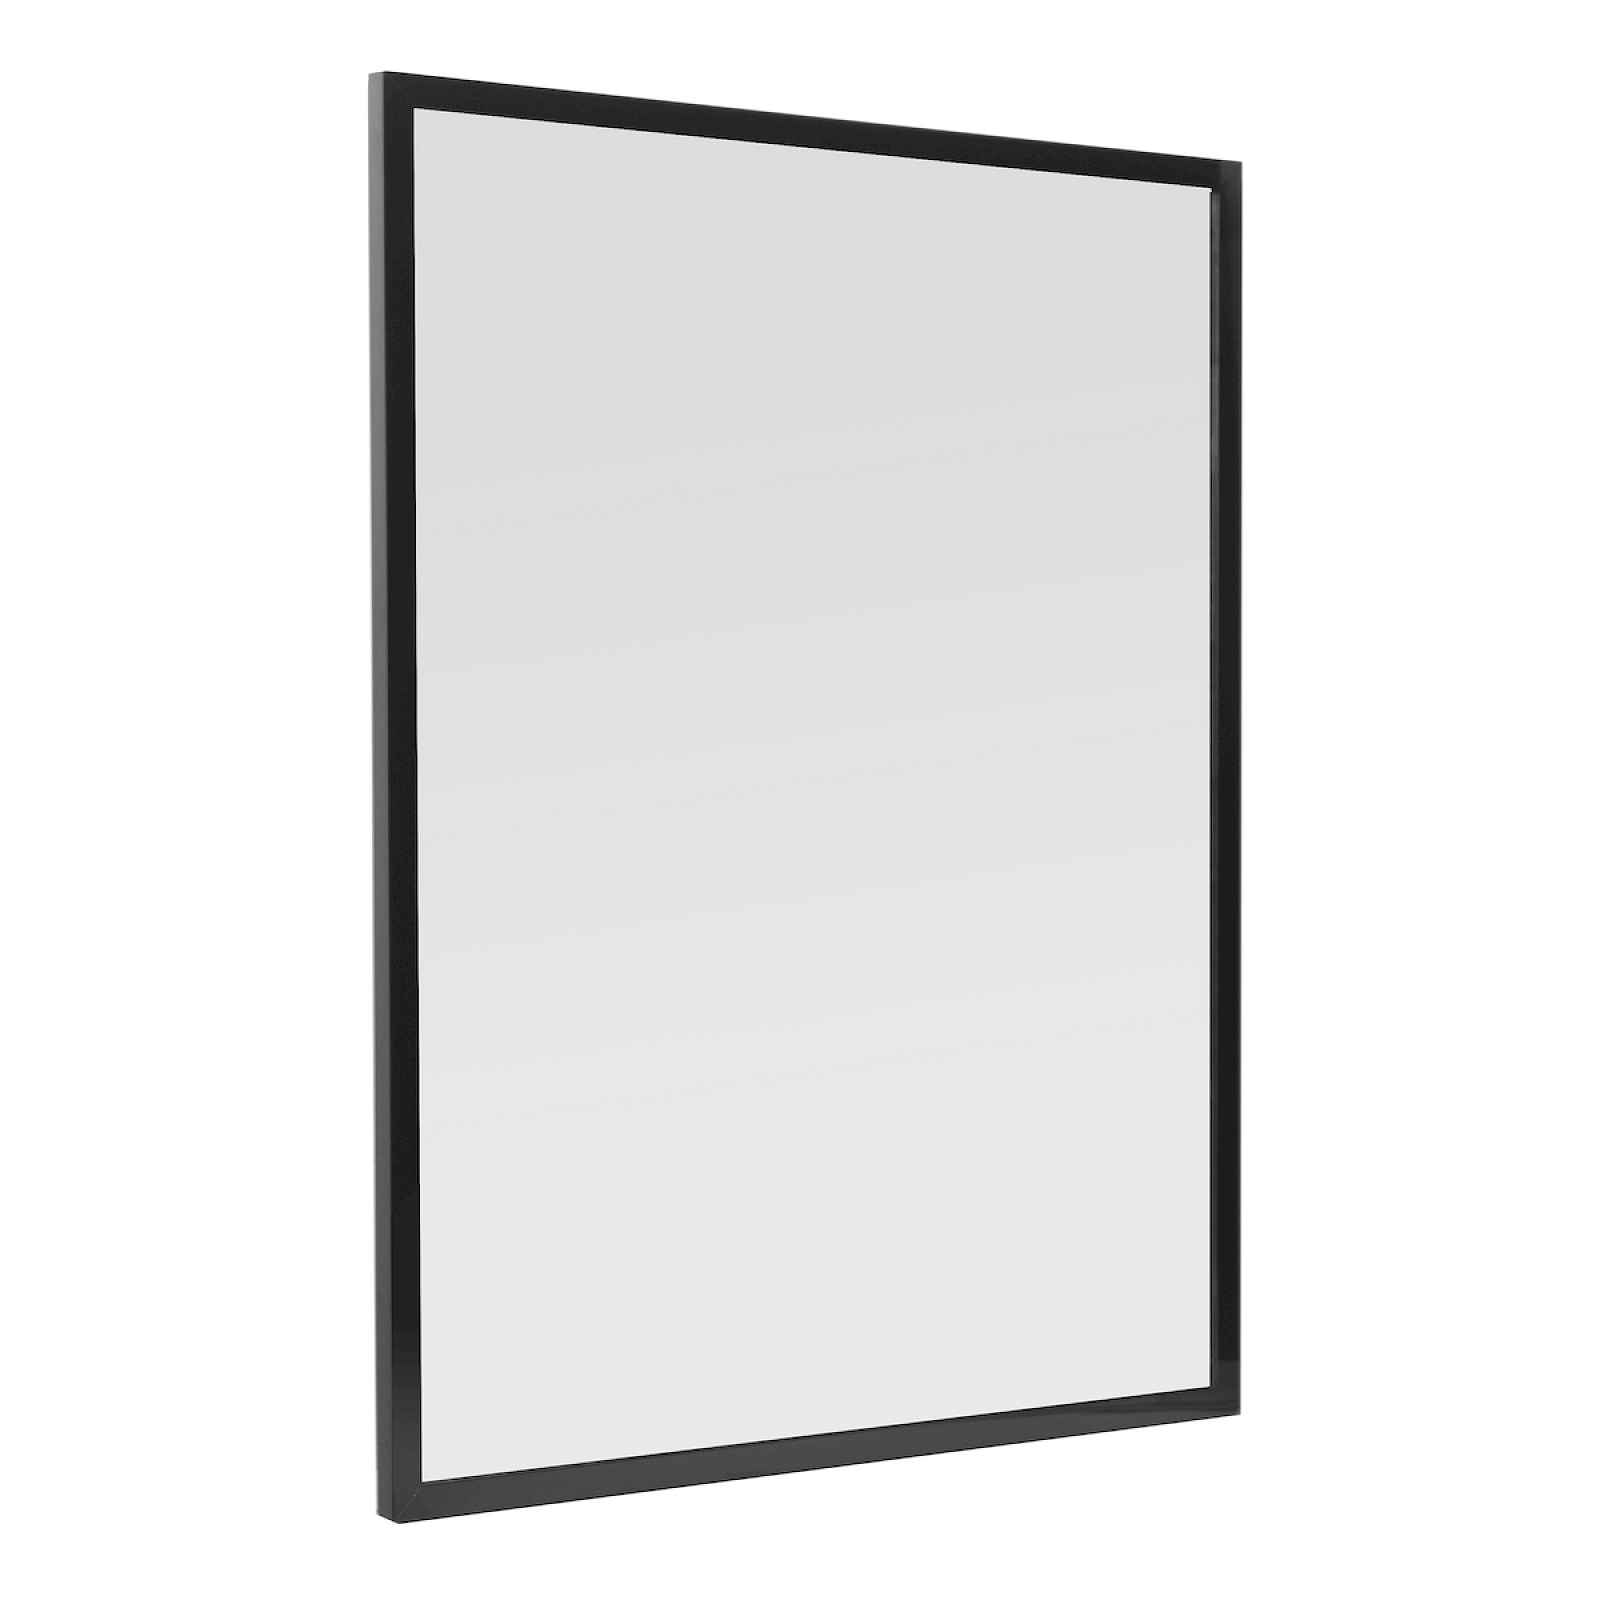 Zrcadlo v černém rámu, 60x80cm, ALUZ6080C